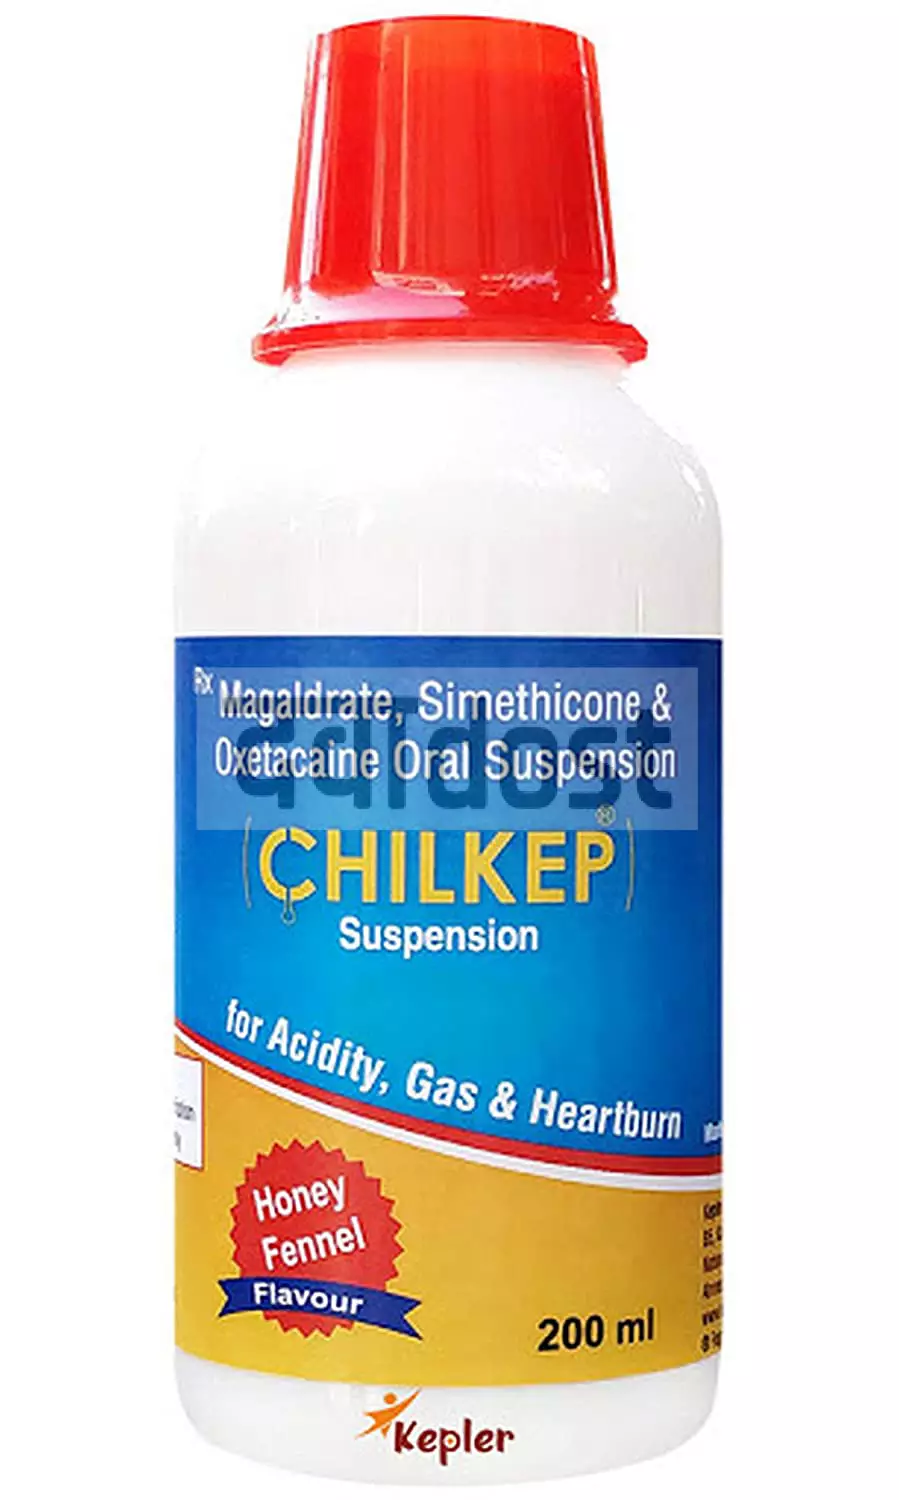 Chilkep Suspension